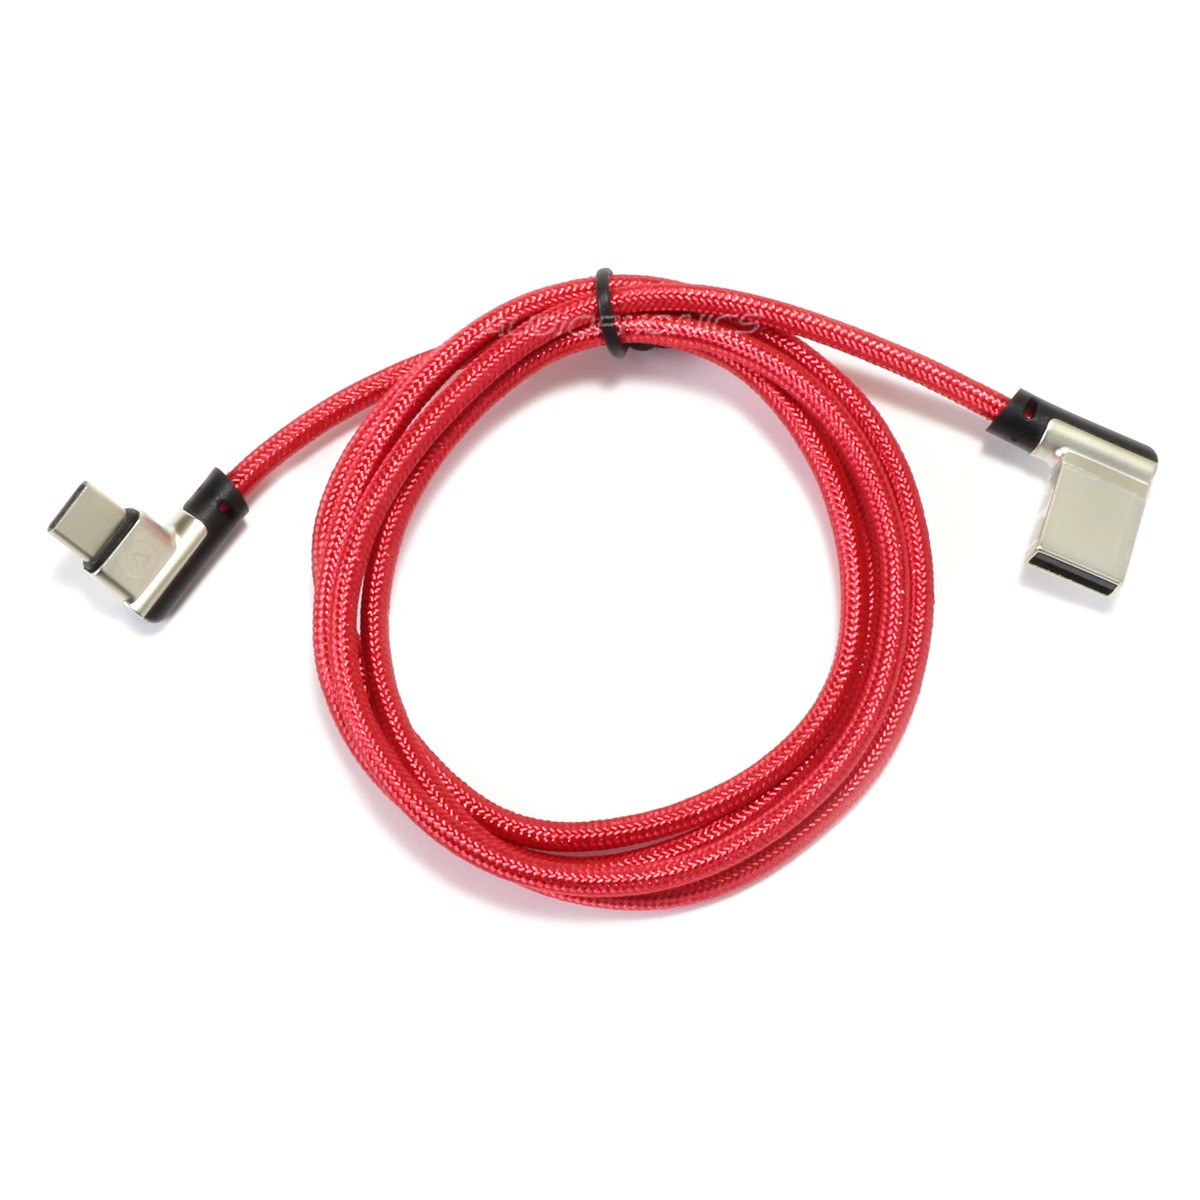 Câble USB-A Mâle vers USB-C Mâle Coudé 90° Rouge 1m